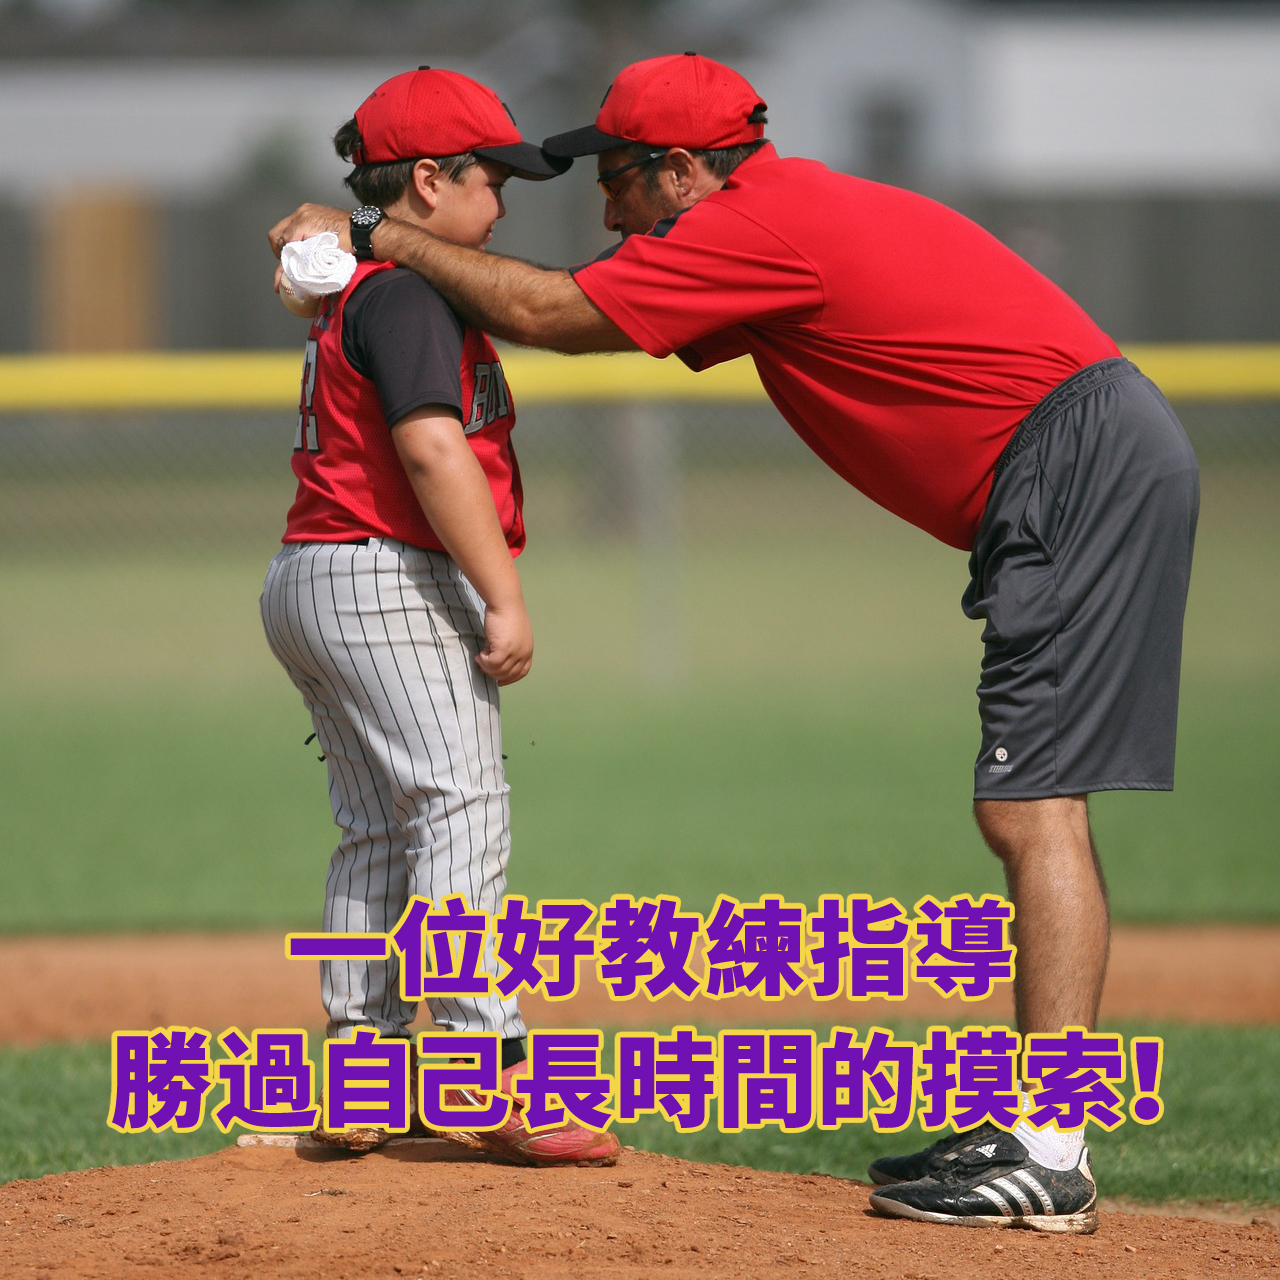 相信自己辦得到-在教練的指導下baseball-1396886_192016888